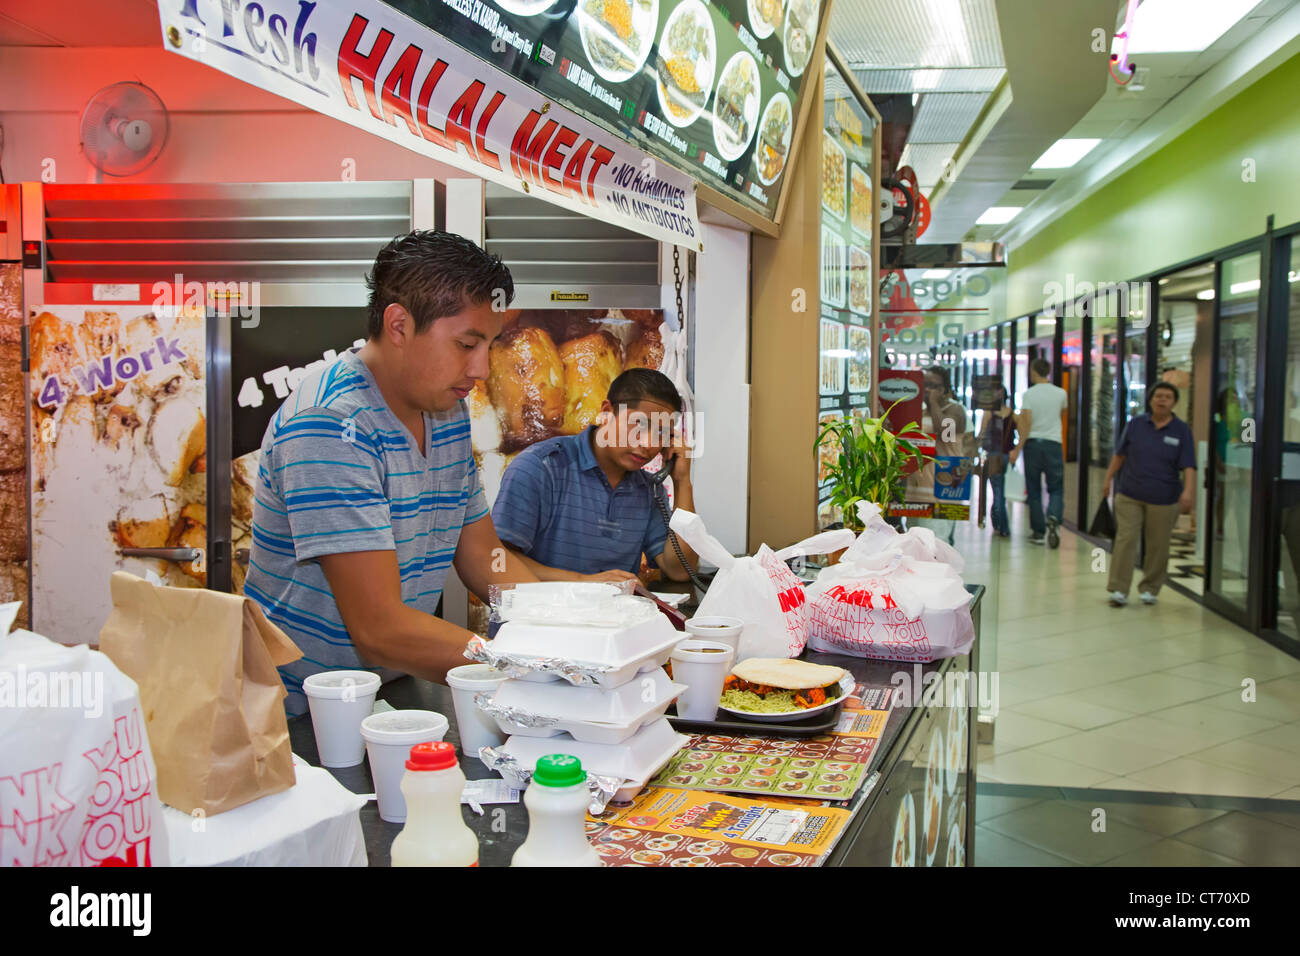 Los Angeles, California - i lavoratori preparare take-out pasti presso un cibo stand che vende carne halal in Los Angeles' fashion district. Foto Stock